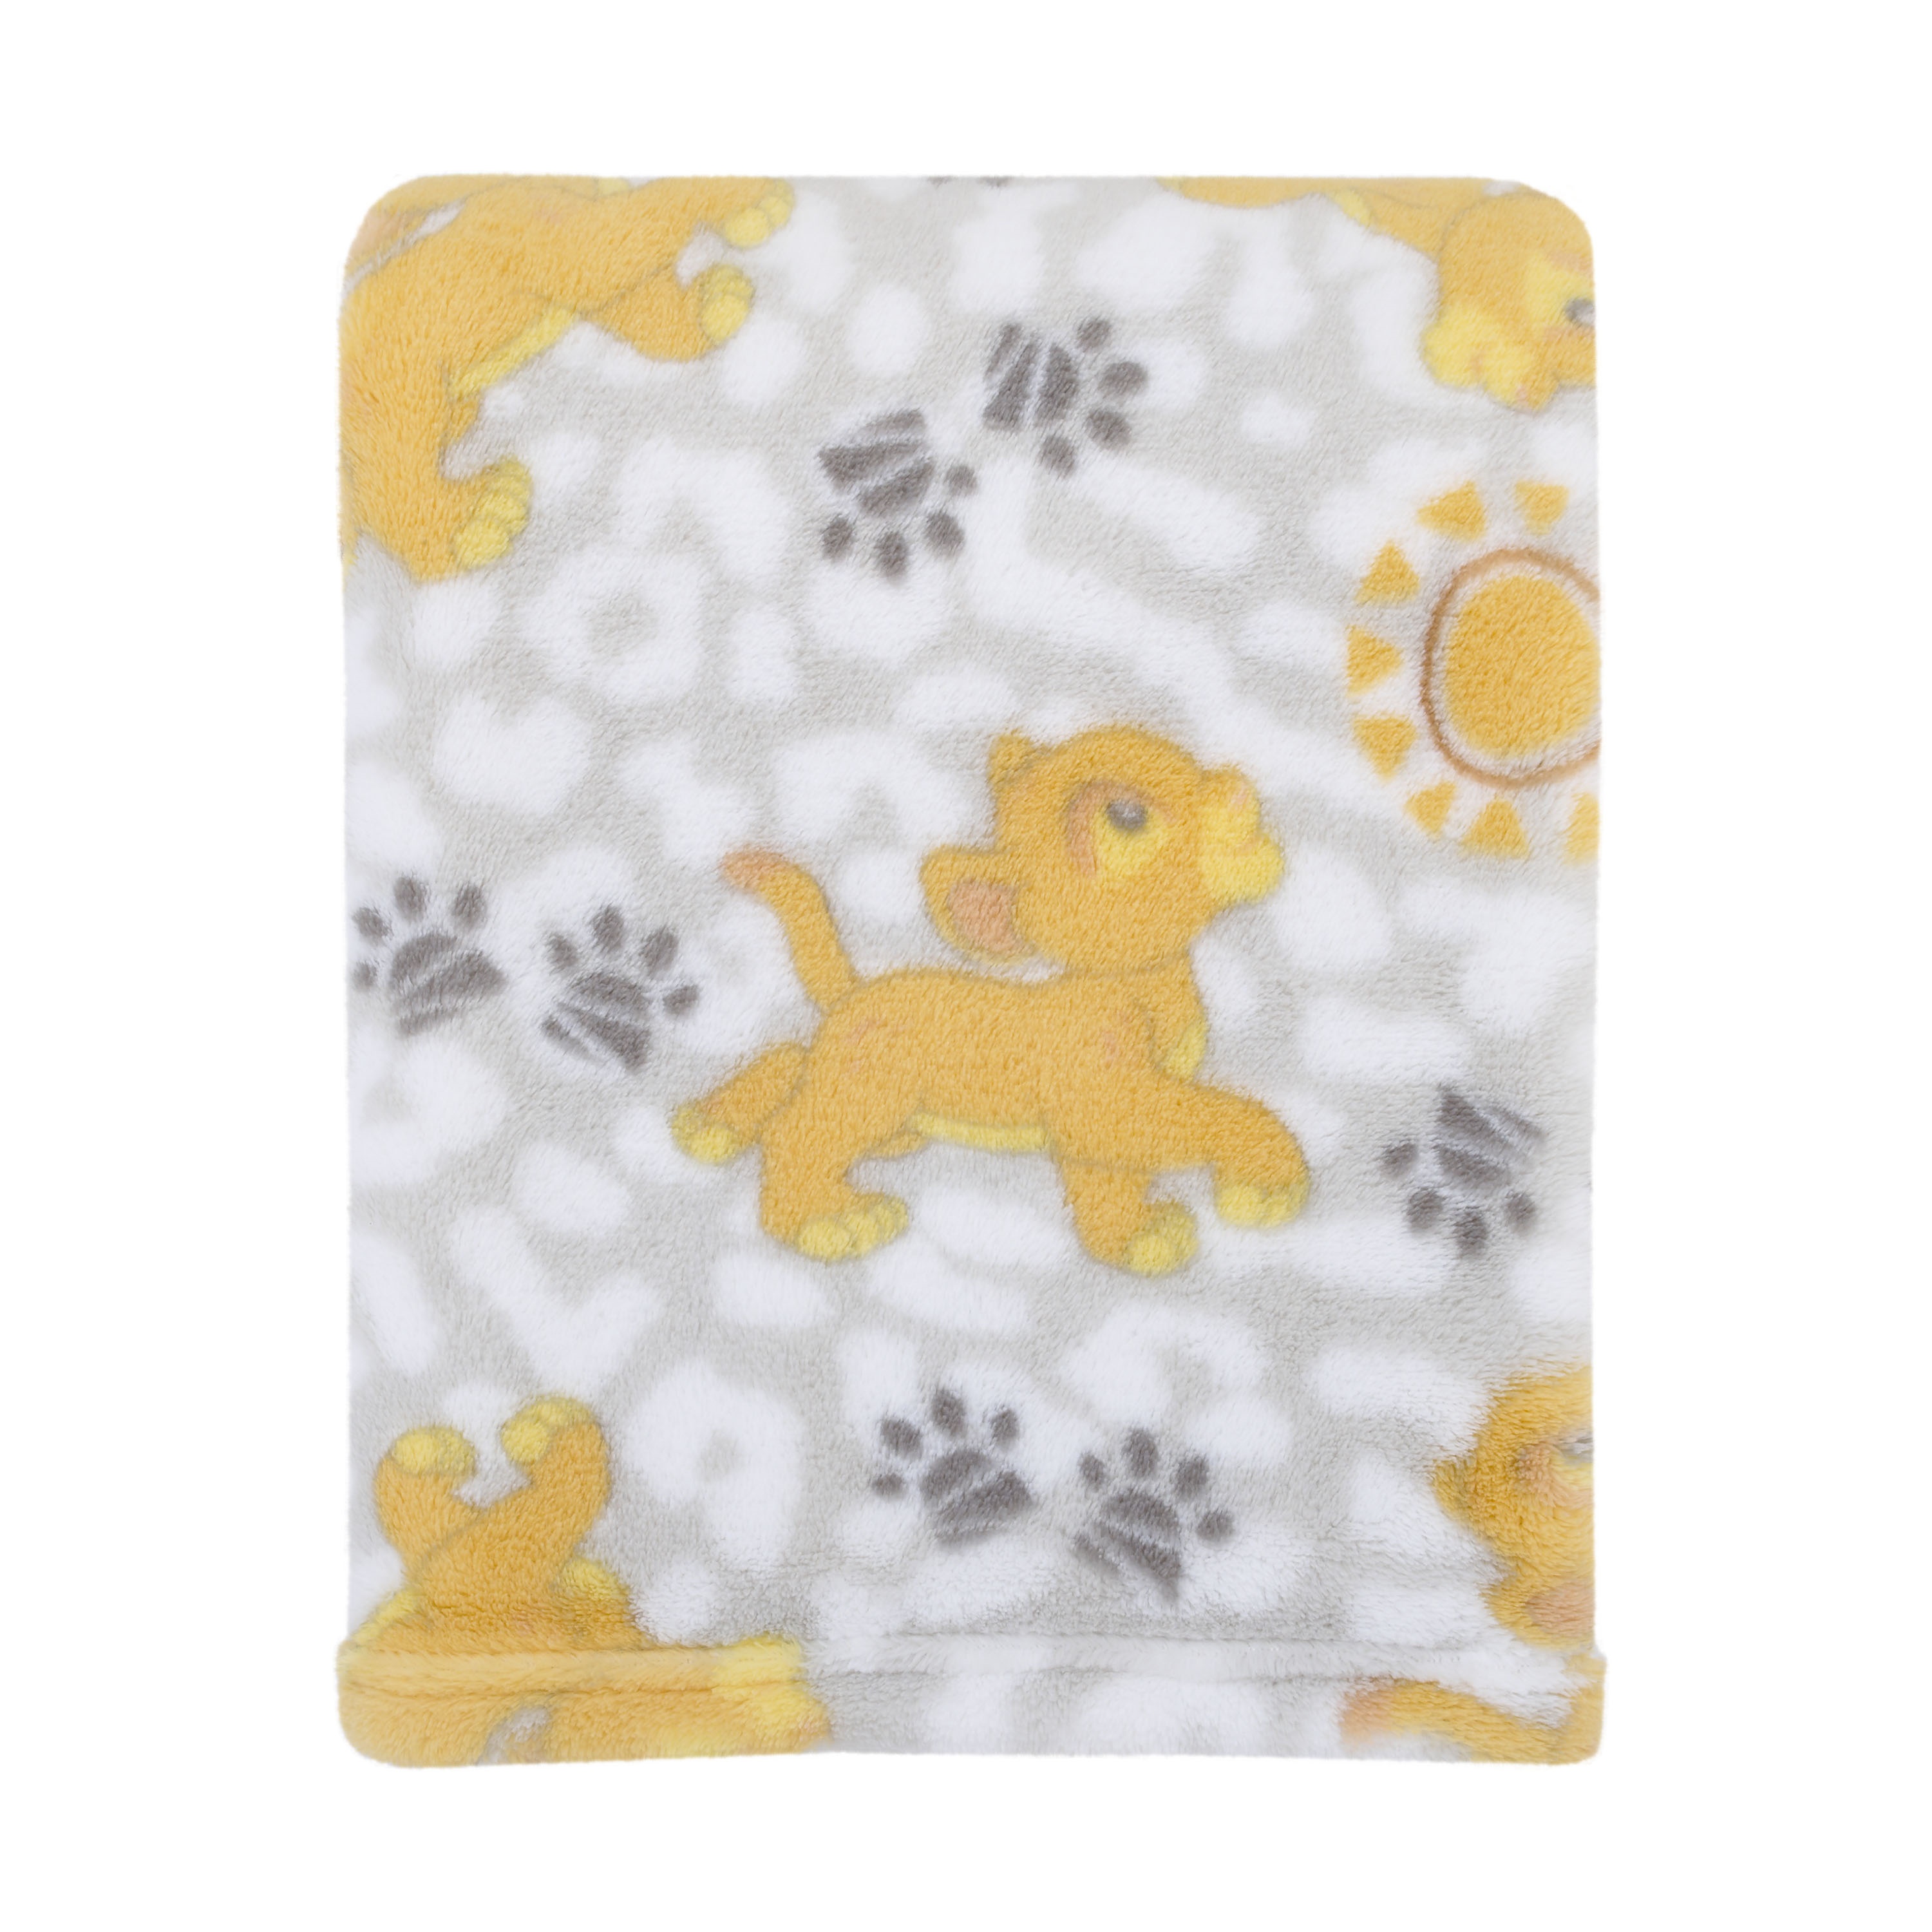 Disney Lion King Plush Grey, Gold Baby Blanket - image 1 of 1